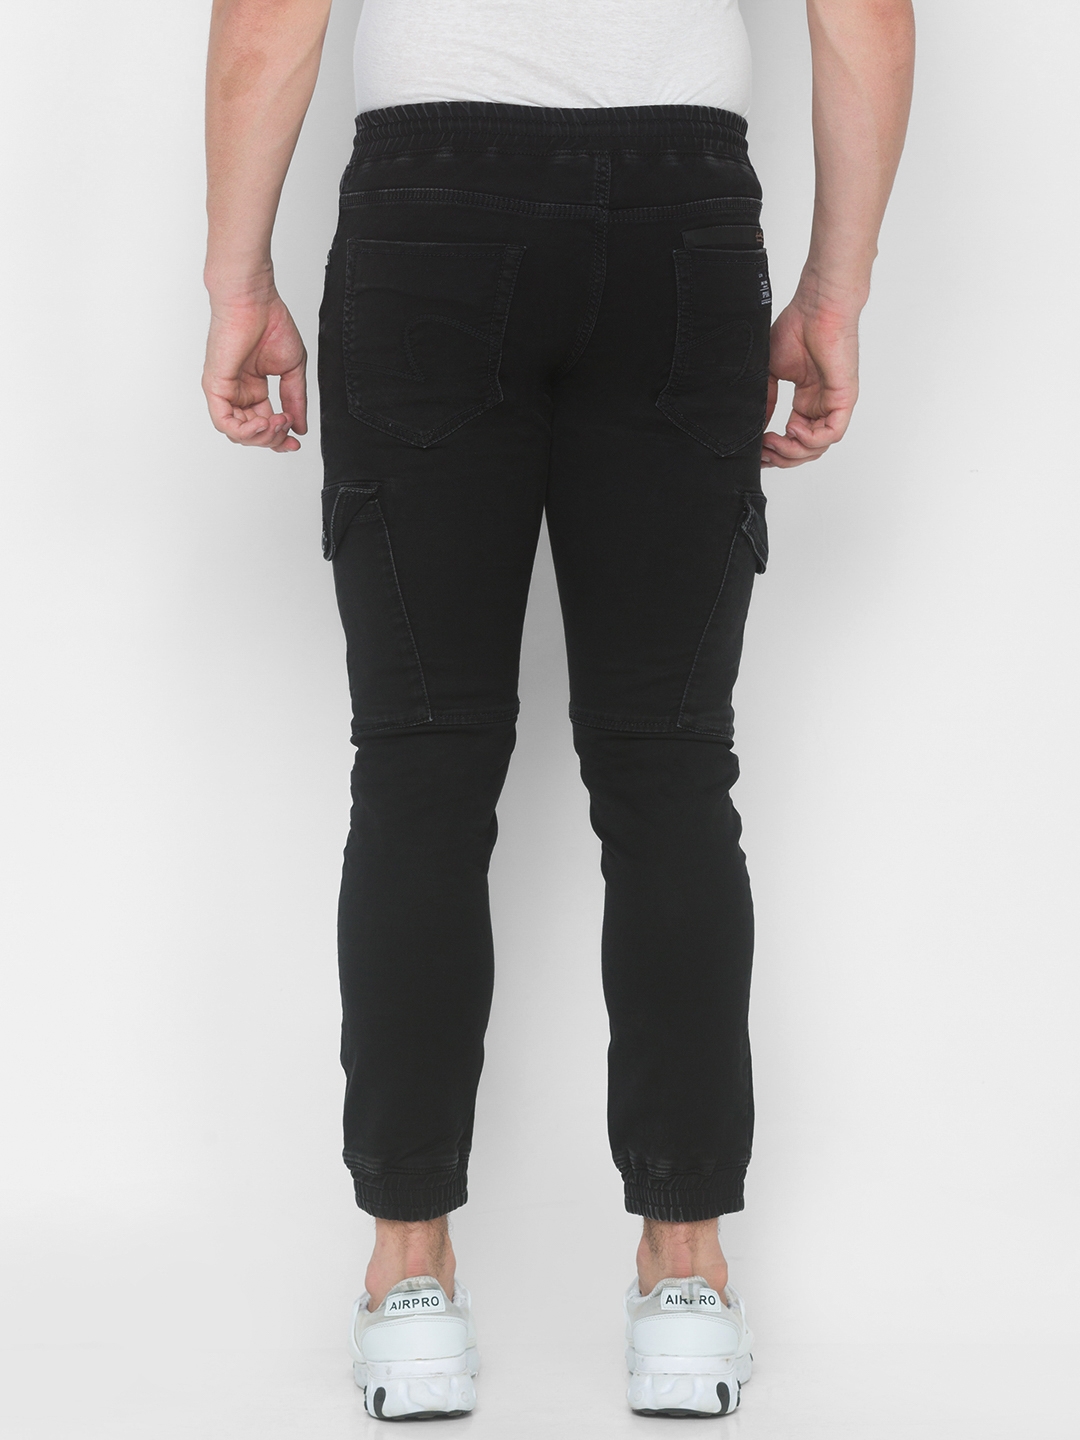 Spykar | Men's Black Cotton Solid Joggers Jeans 2